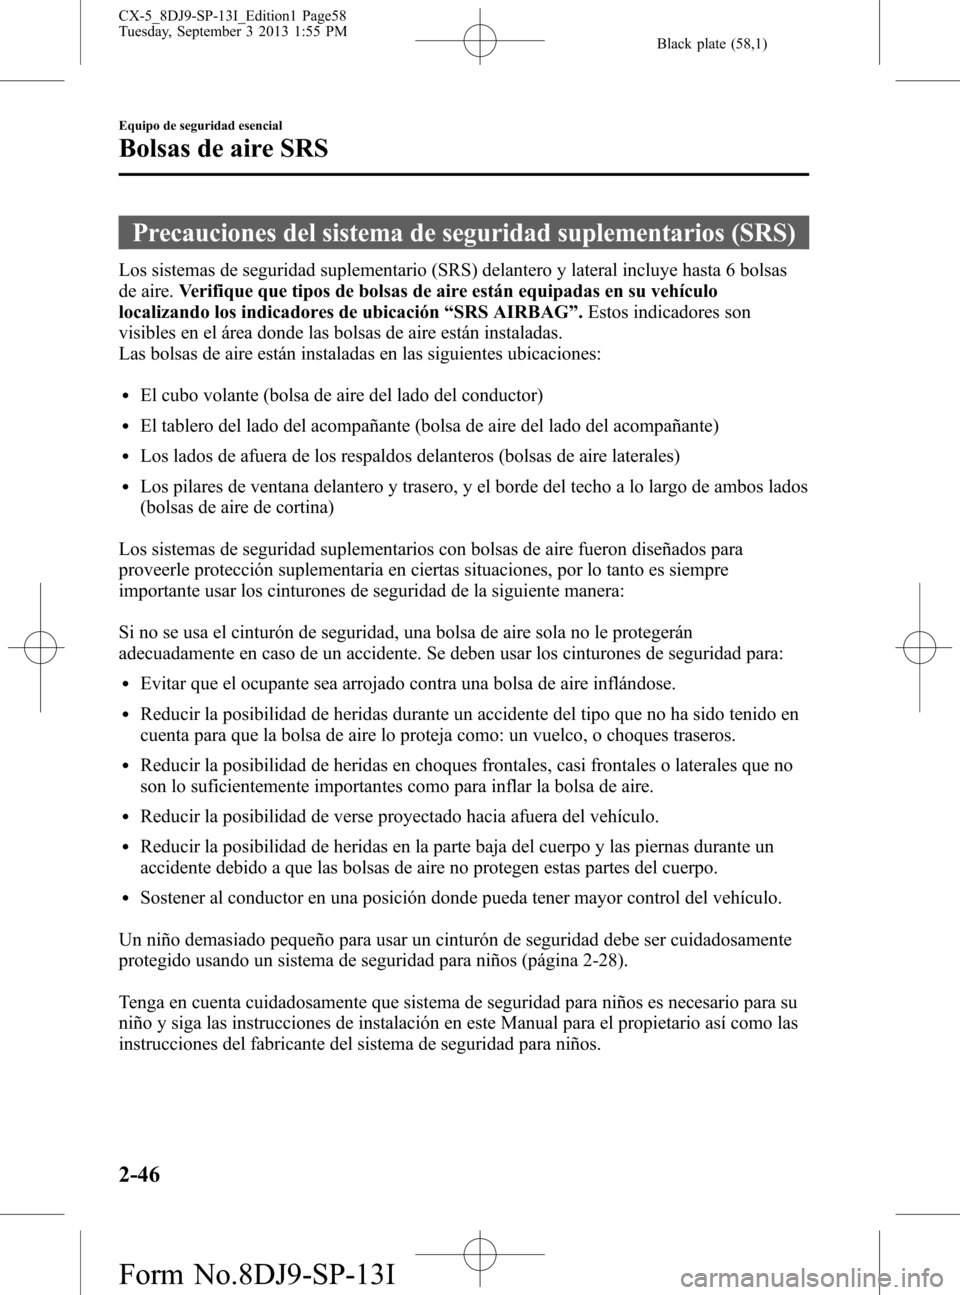 MAZDA MODEL CX-5 2014  Manual del propietario (in Spanish) Black plate (58,1)
Precauciones del sistema de seguridad suplementarios (SRS)
Los sistemas de seguridad suplementario (SRS) delantero y lateral incluye hasta 6 bolsas
de aire.Verifique que tipos de bo